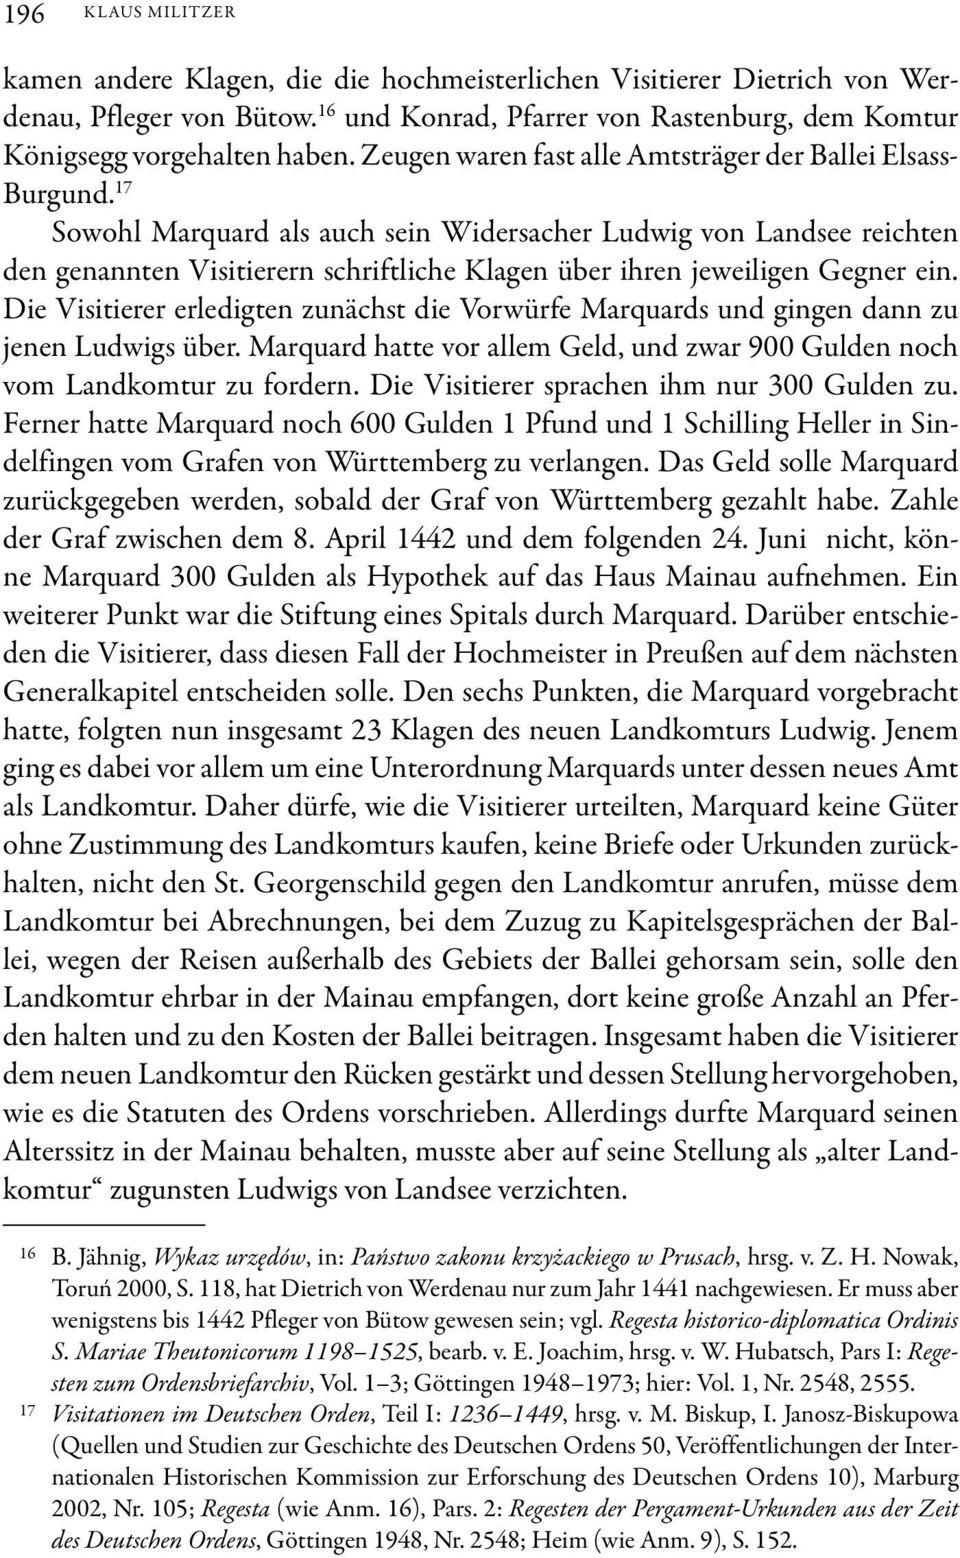 17 Sowohl Marquard als auch sein Widersacher Ludwig von Landsee reichten den genannten Visitierern schriftliche Klagen über ihren jeweiligen Gegner ein.